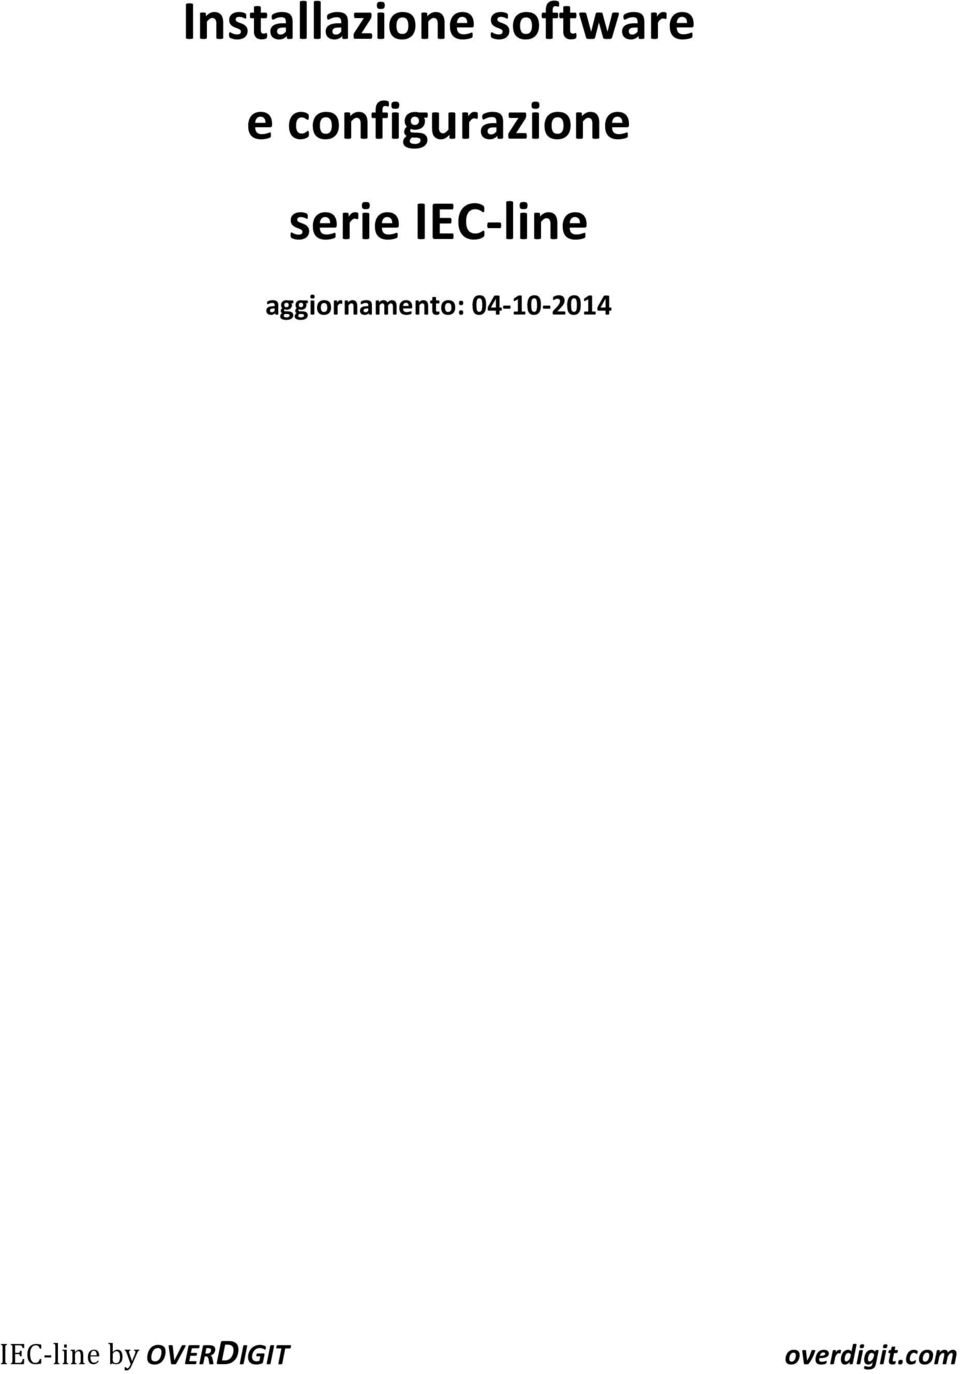 IEC-line aggiornamento: